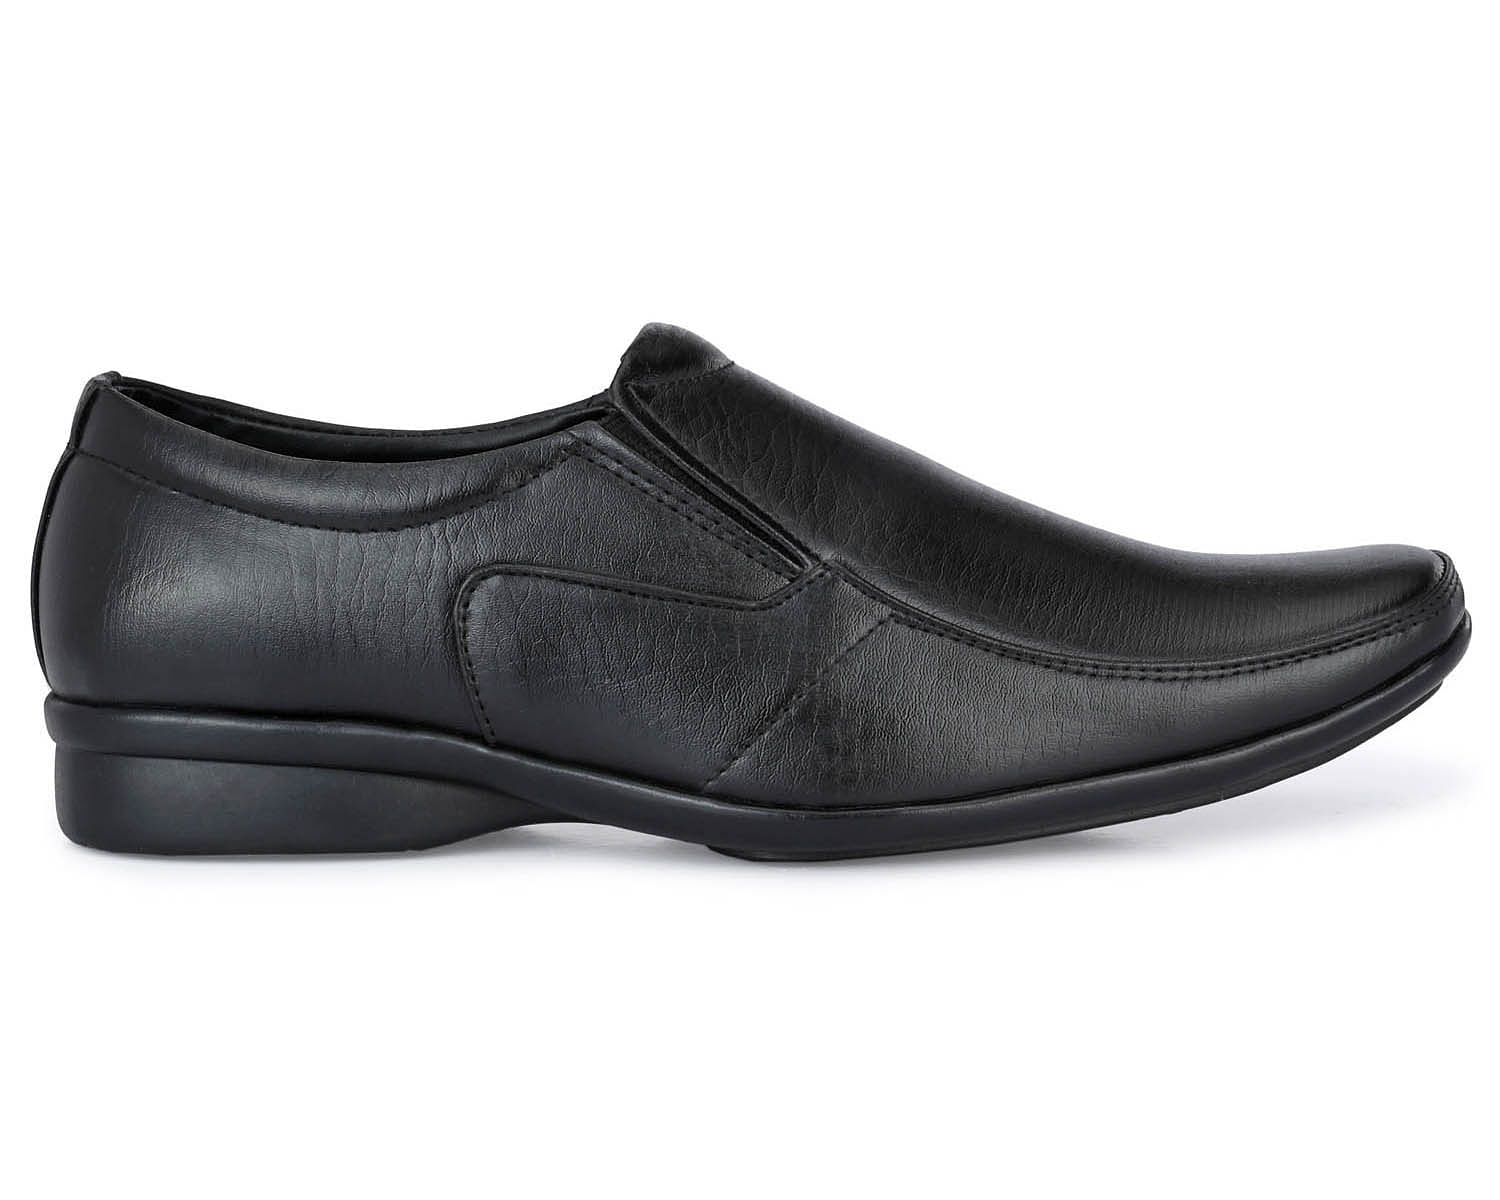 Pair-it Men moccasin Formal Shoes -MN-RYDER222 - Black